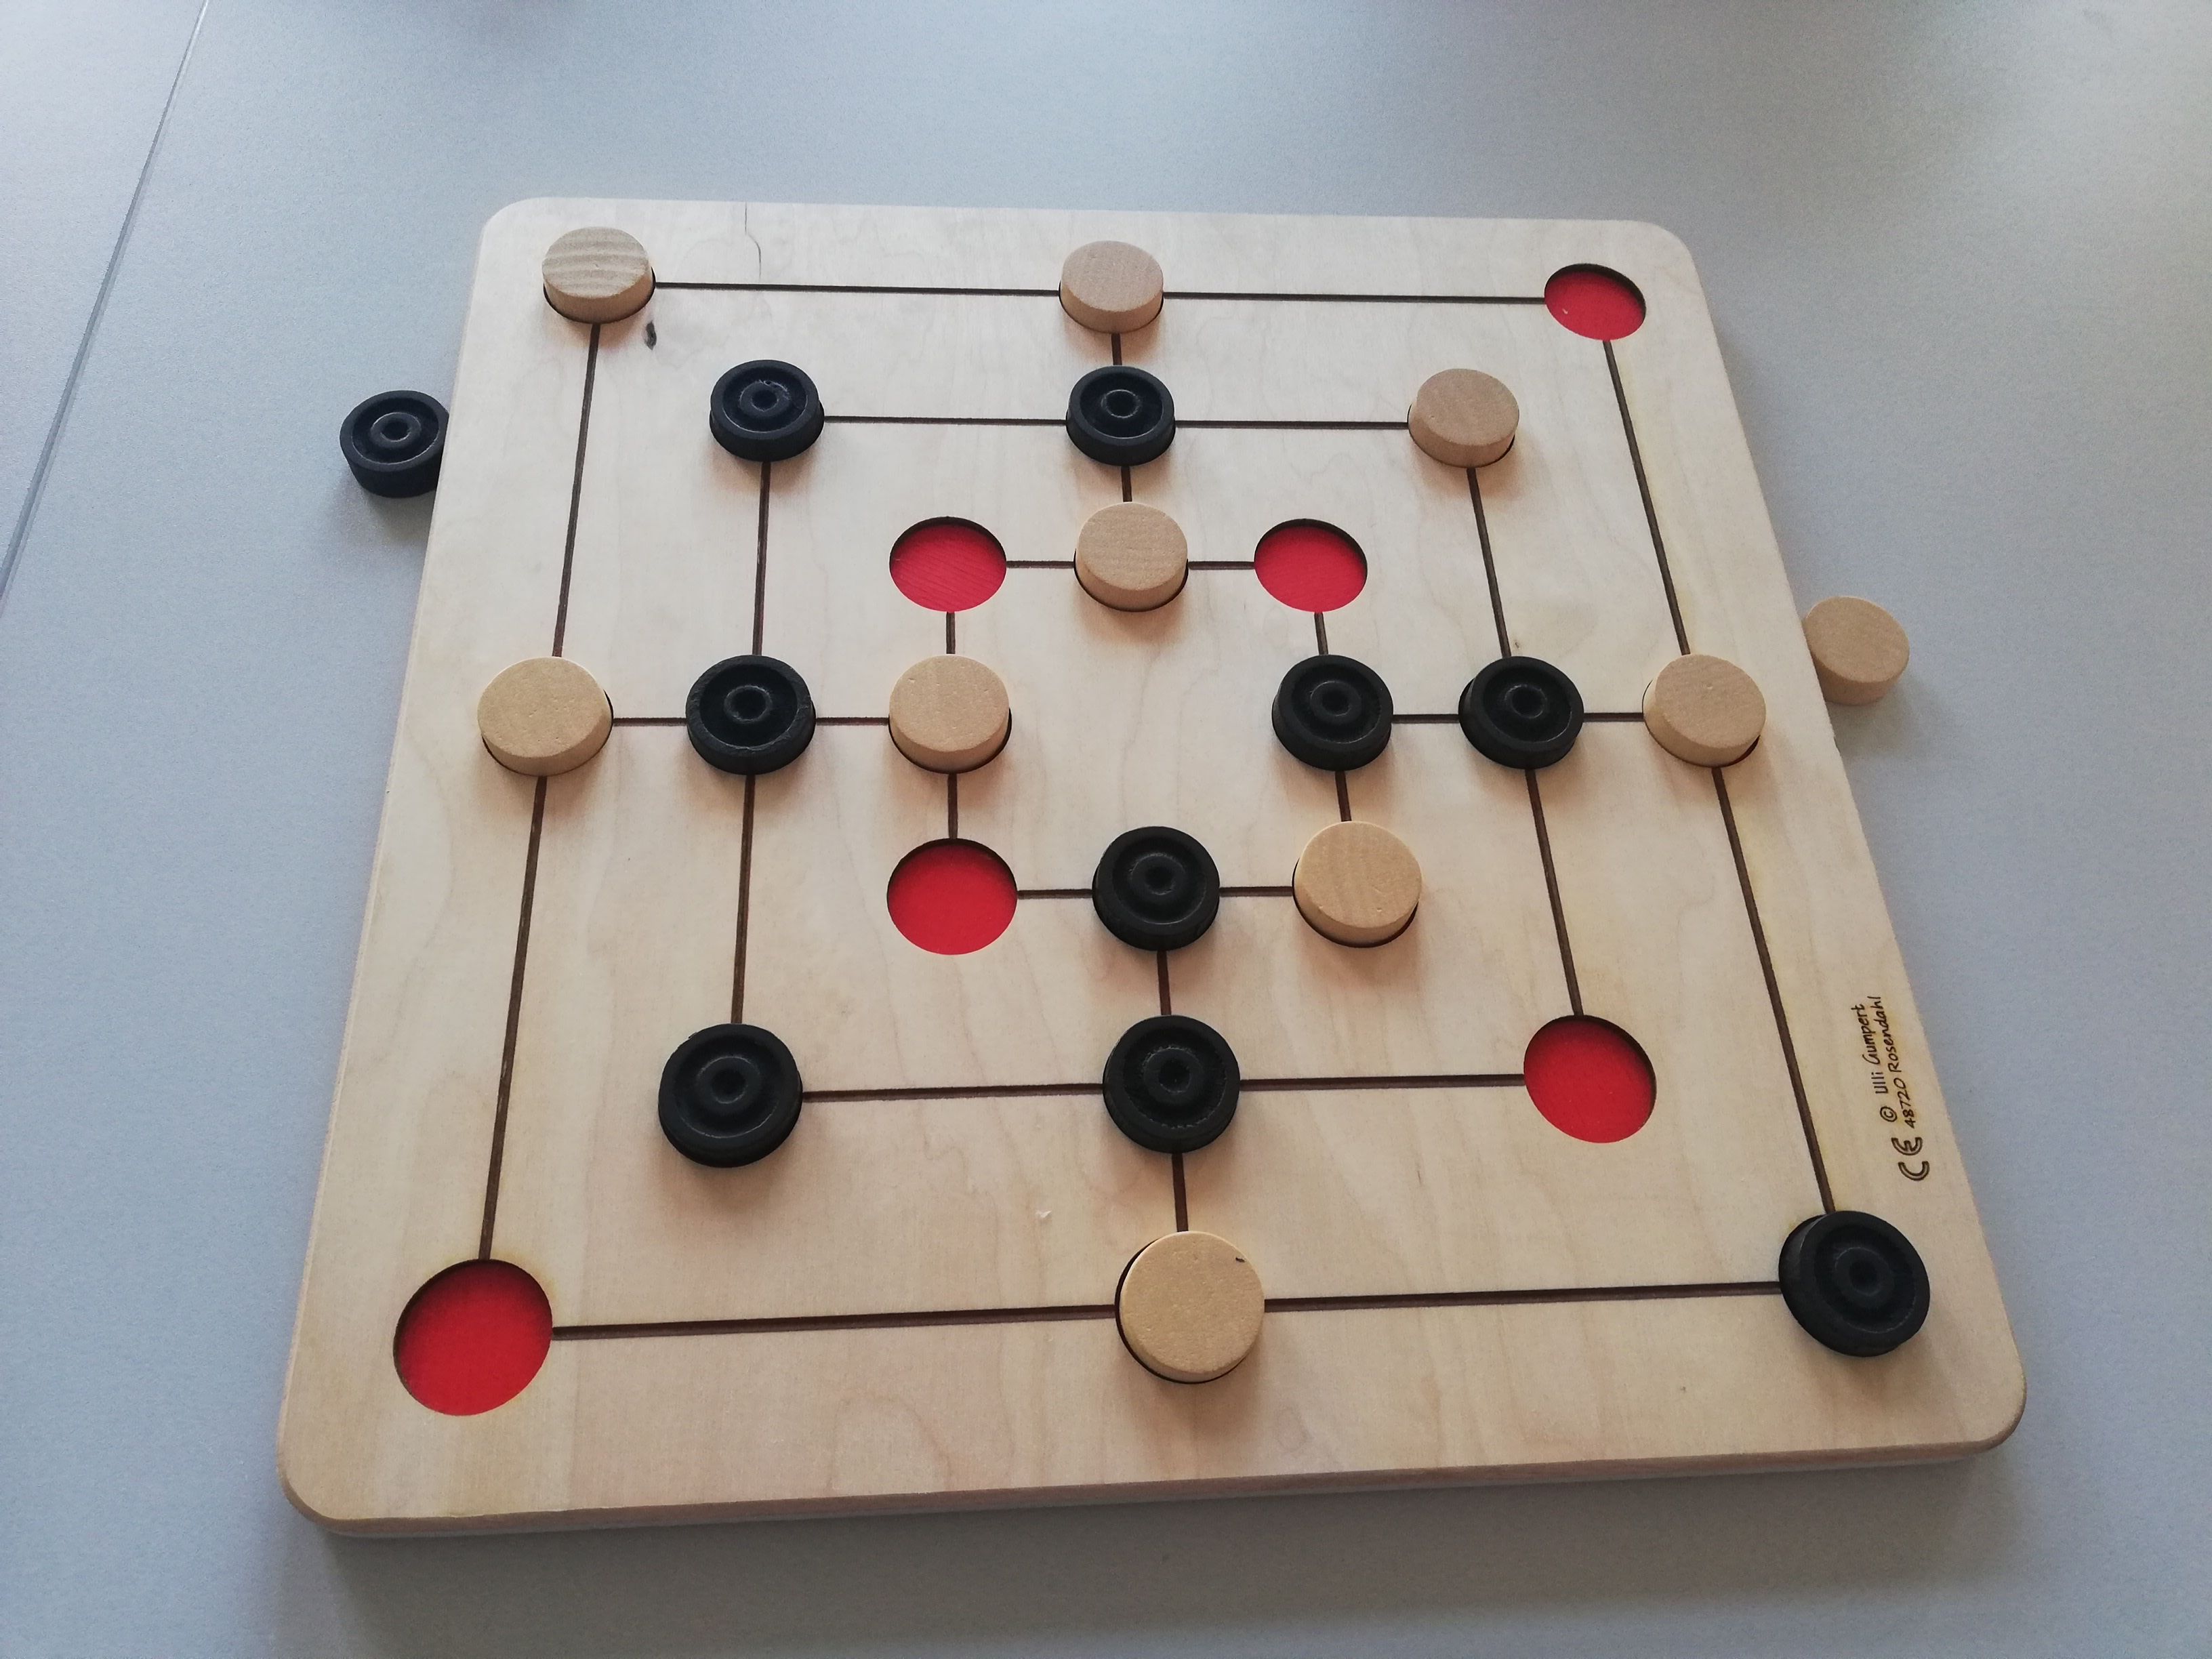 Quadratisches Spielbrett mit ineinanderliegenden Quadraten. Deren Seitenmitten sind über Geraden miteinander verbunden. An den Schnittpunkten und den Ecken sind runde Vertiefungen. Viele Spielsteine in weiß und schwarz sind gesetzt.